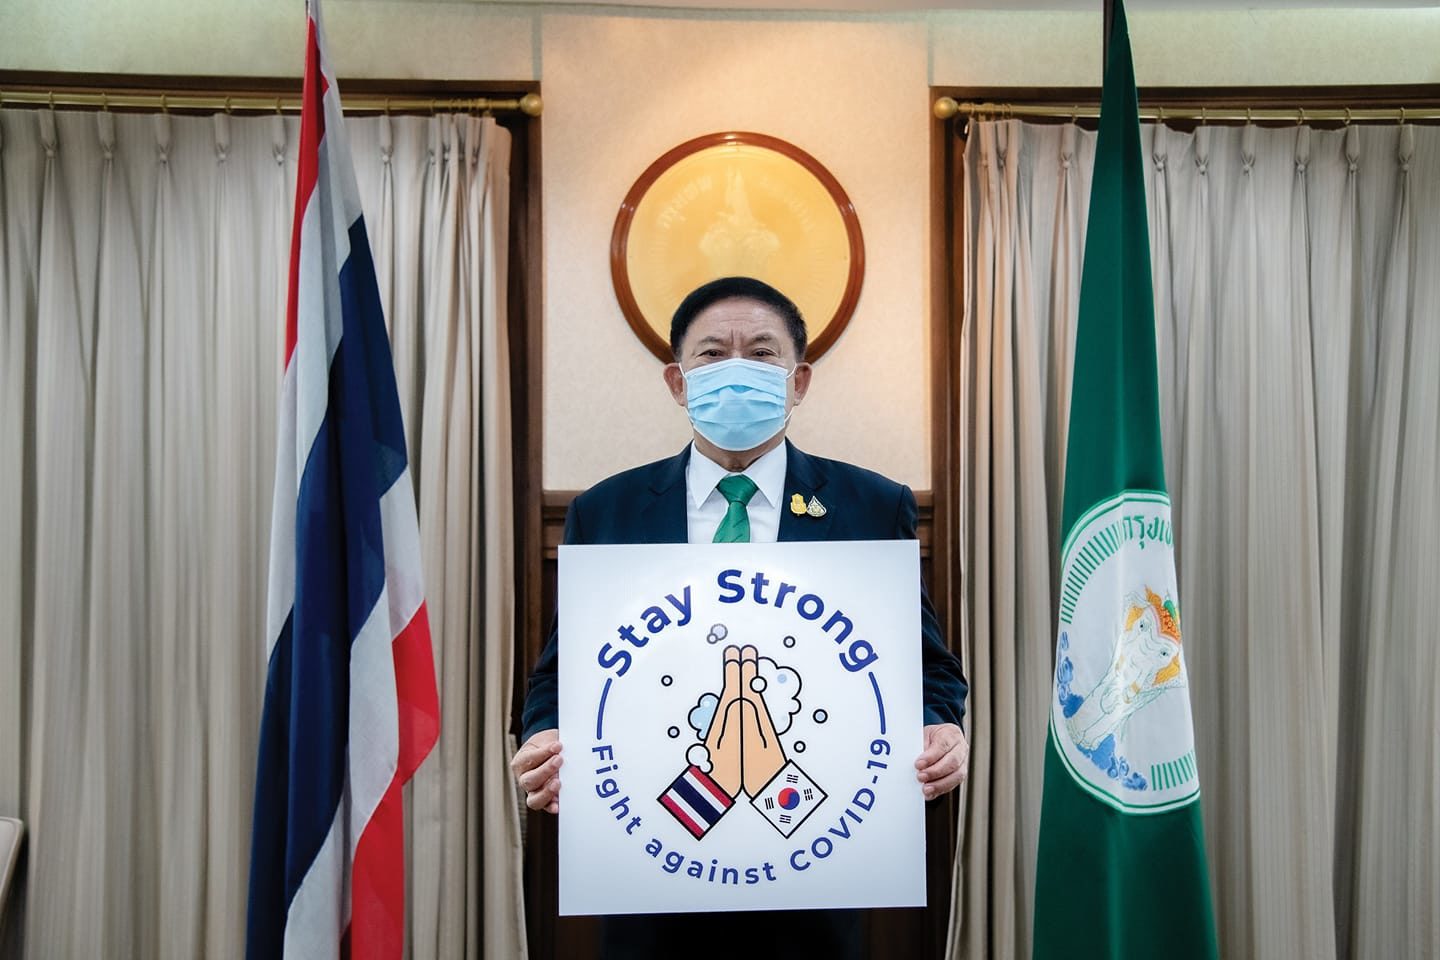 "ผู้ว่าอัศวิน" ร่วมกิจกรรมรณรงค์ Stay Strong Campaign ให้คนไทยและทั่วโลกผ่านวิกฤตไปด้วยกัน